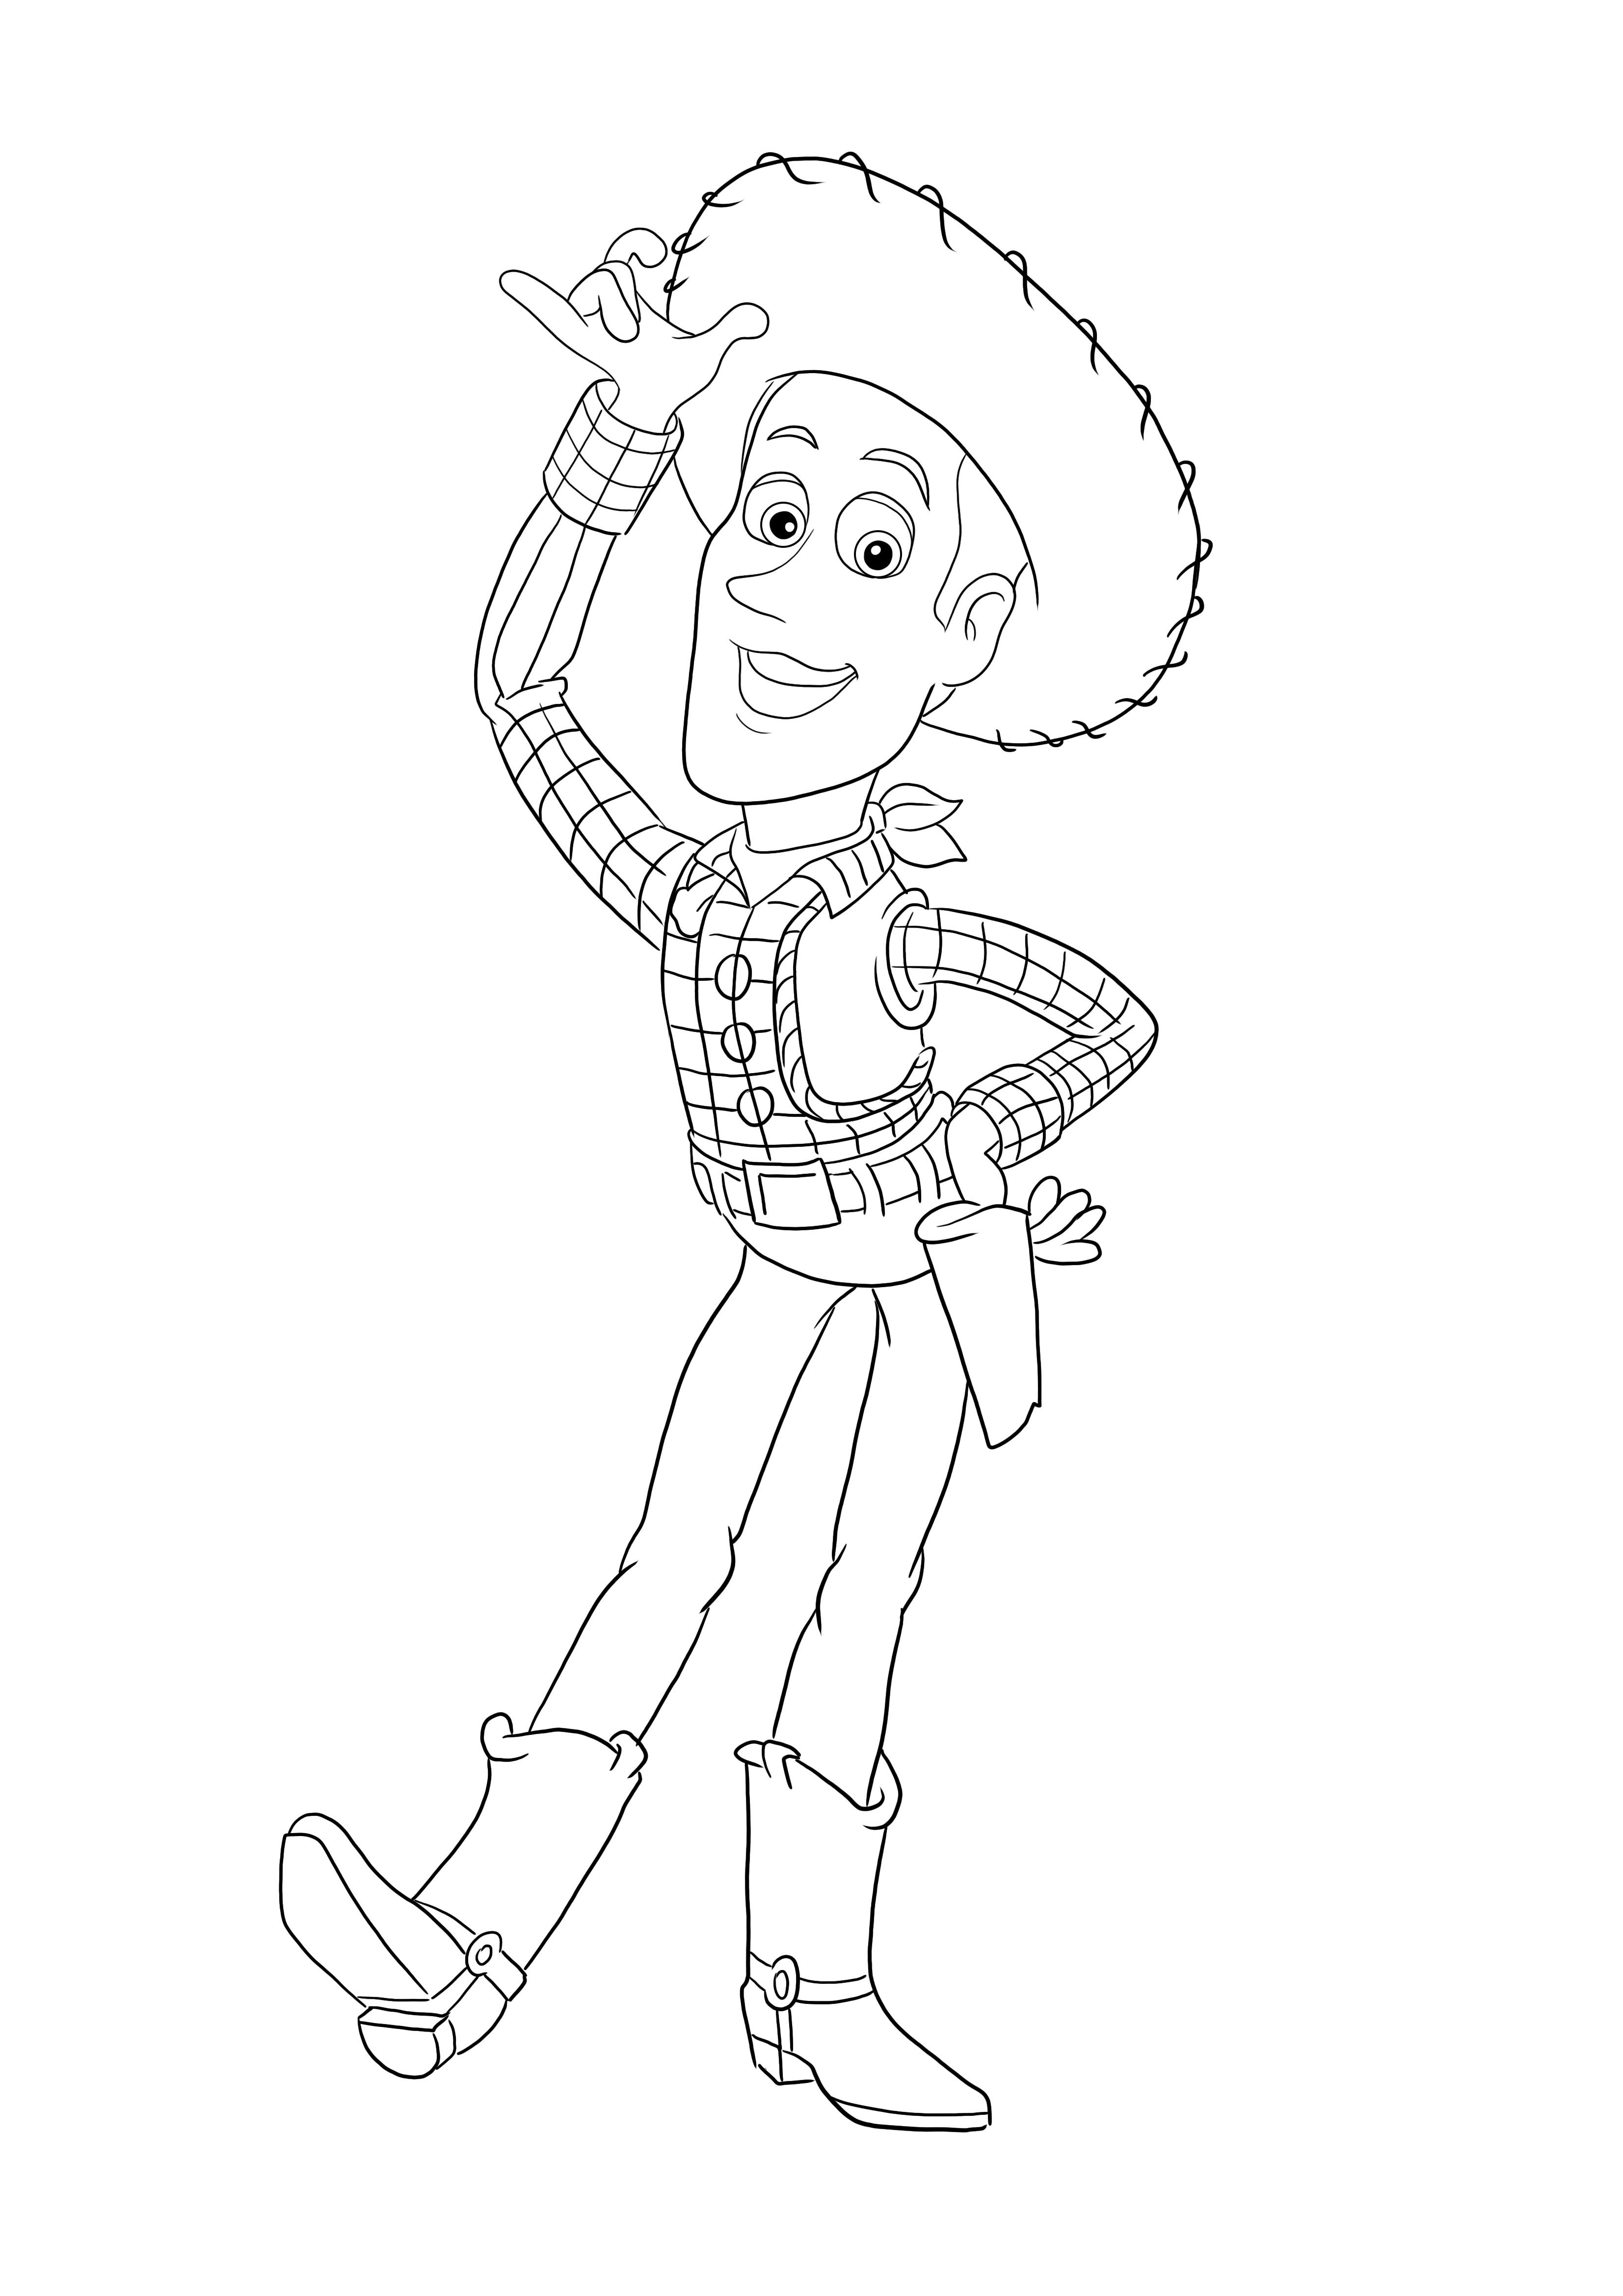 Woody színező oldalai a Toy Storyból ingyenesen nyomtathatók vagy letölthetők minden korosztály számára